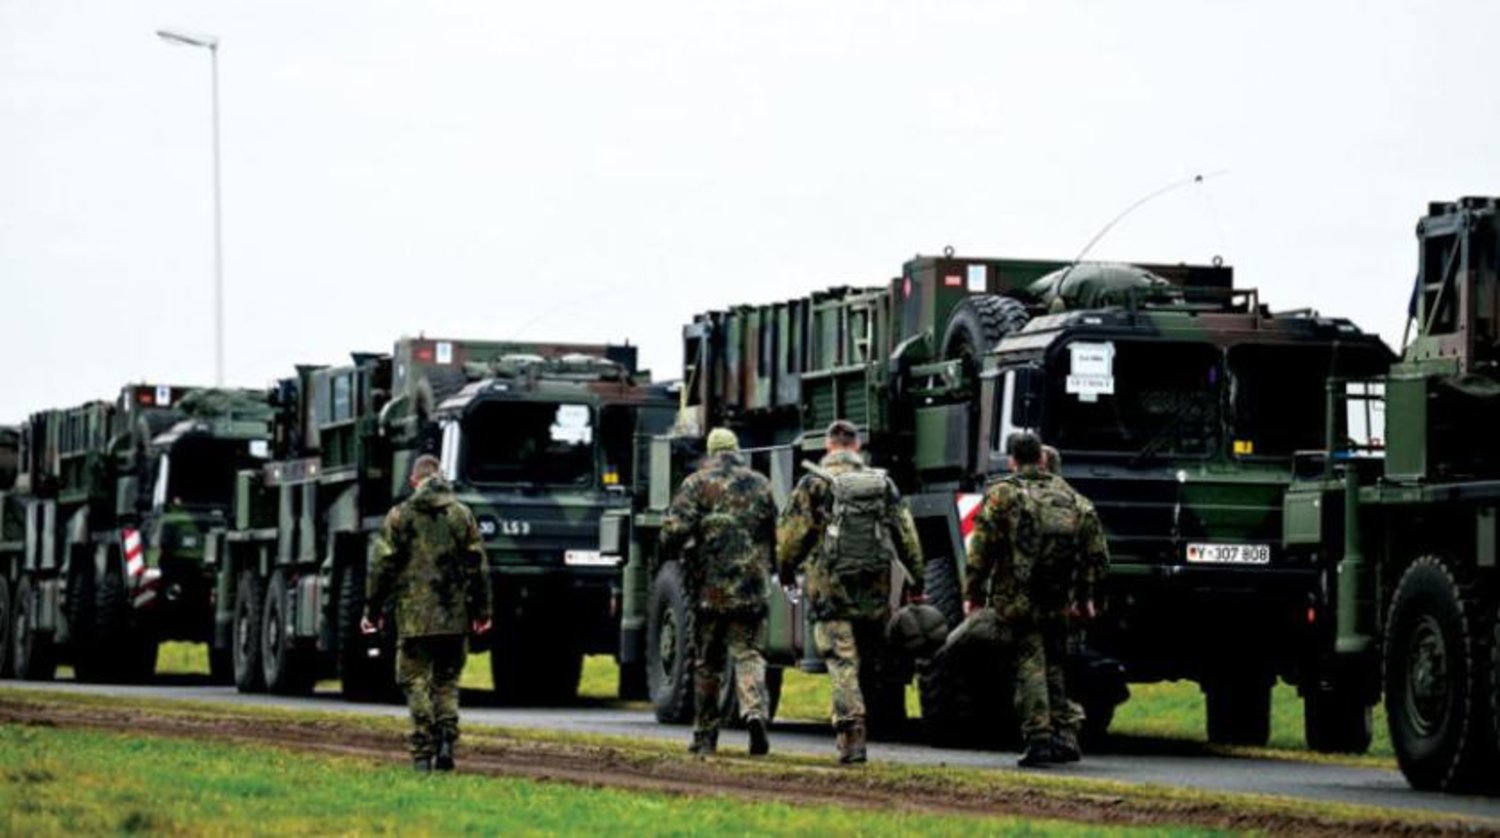 Patriot hava savunma sistemlerinin Almanya'nın Gnoien şehrinden Polonya'ya nakledildiği araçların yanında yürüyen Alman askerleri (Reuters)